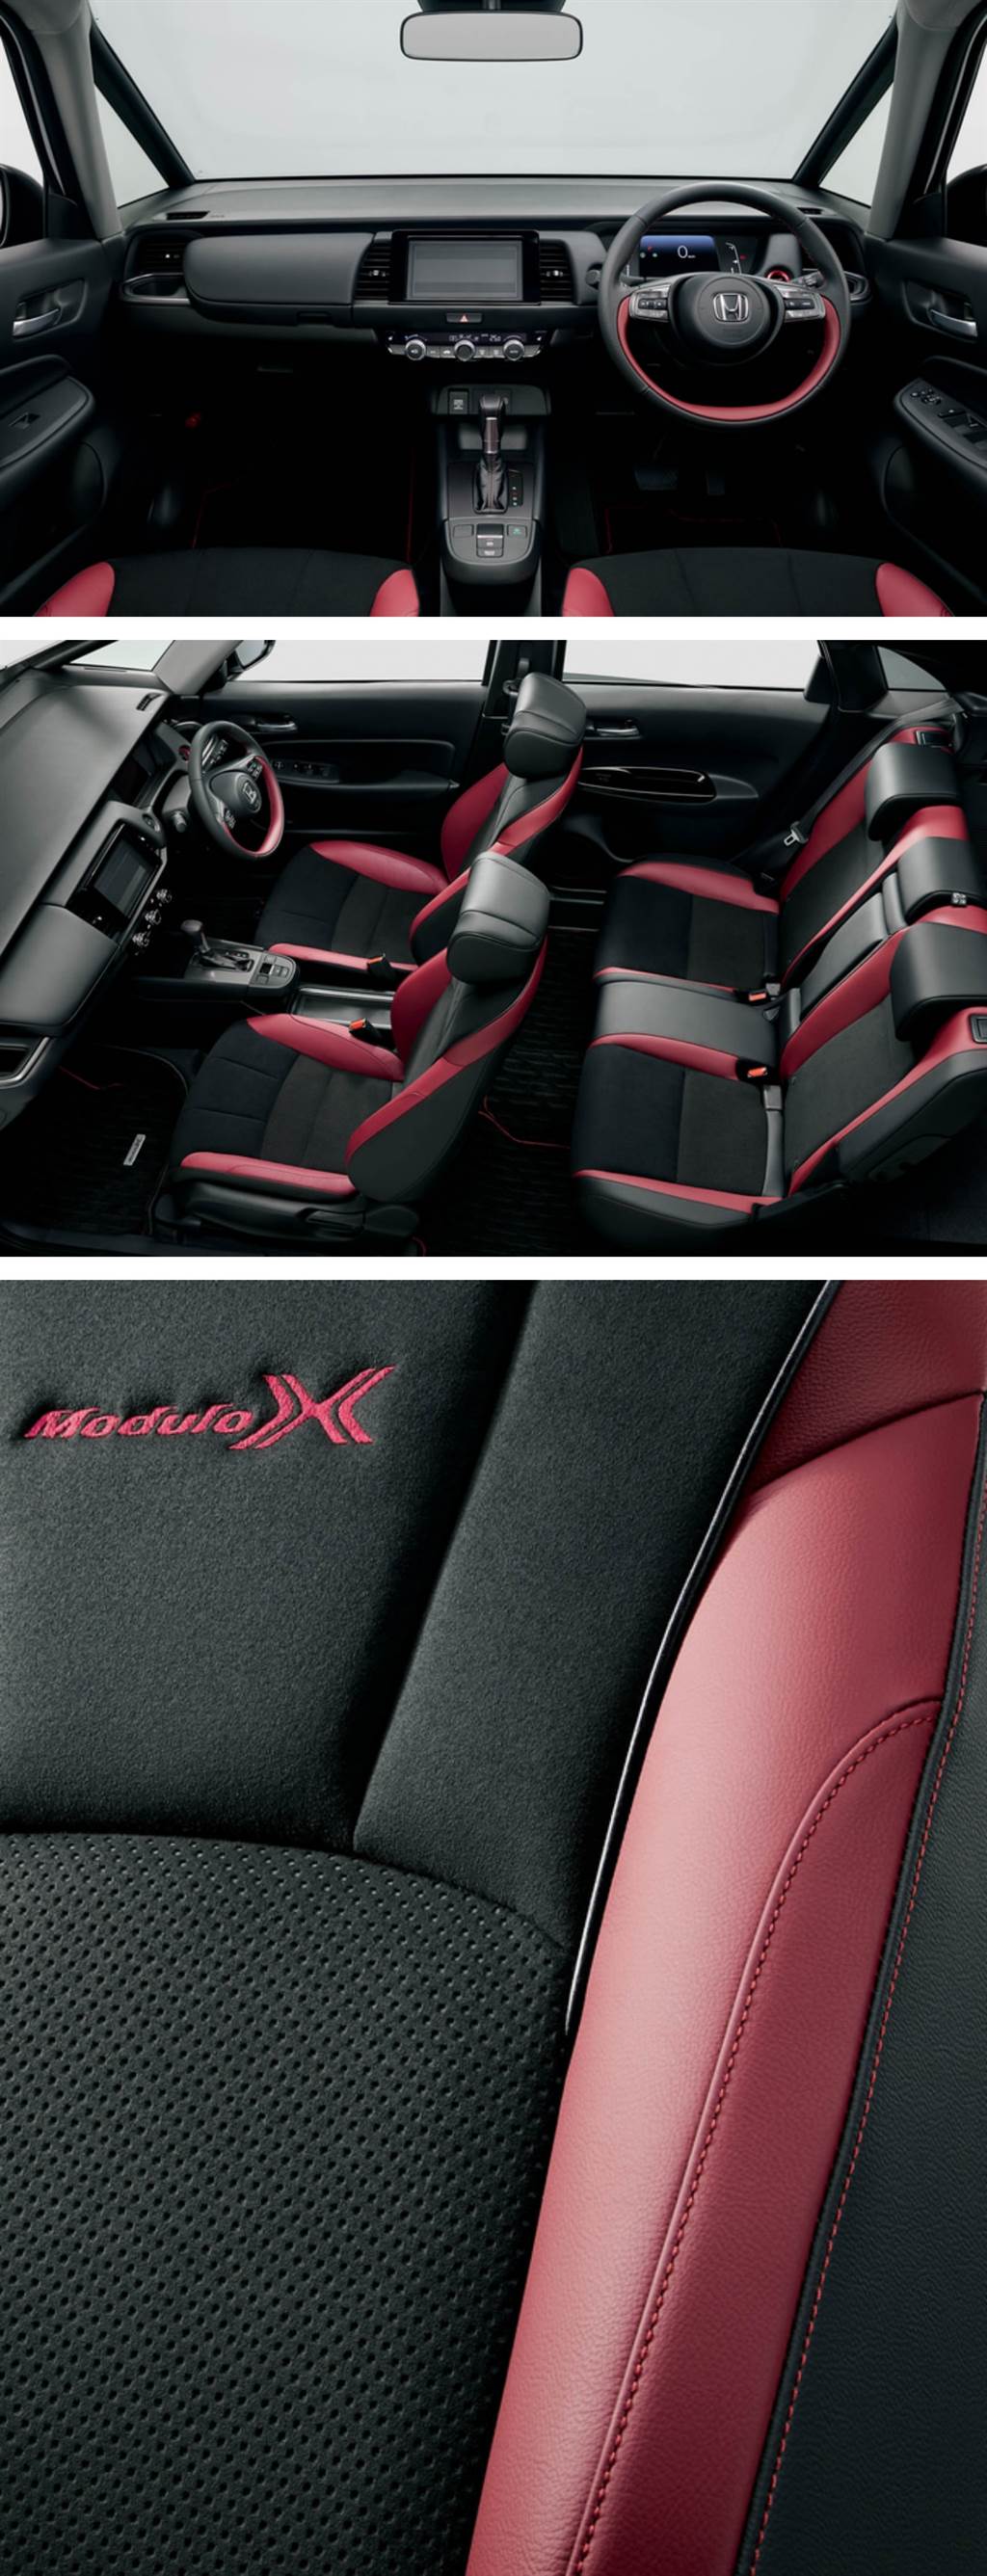 慶祝販售 20 週年，Honda FIT 特別仕様車 Casa / Maison 以及運動版 Modulo X 同步首發！
